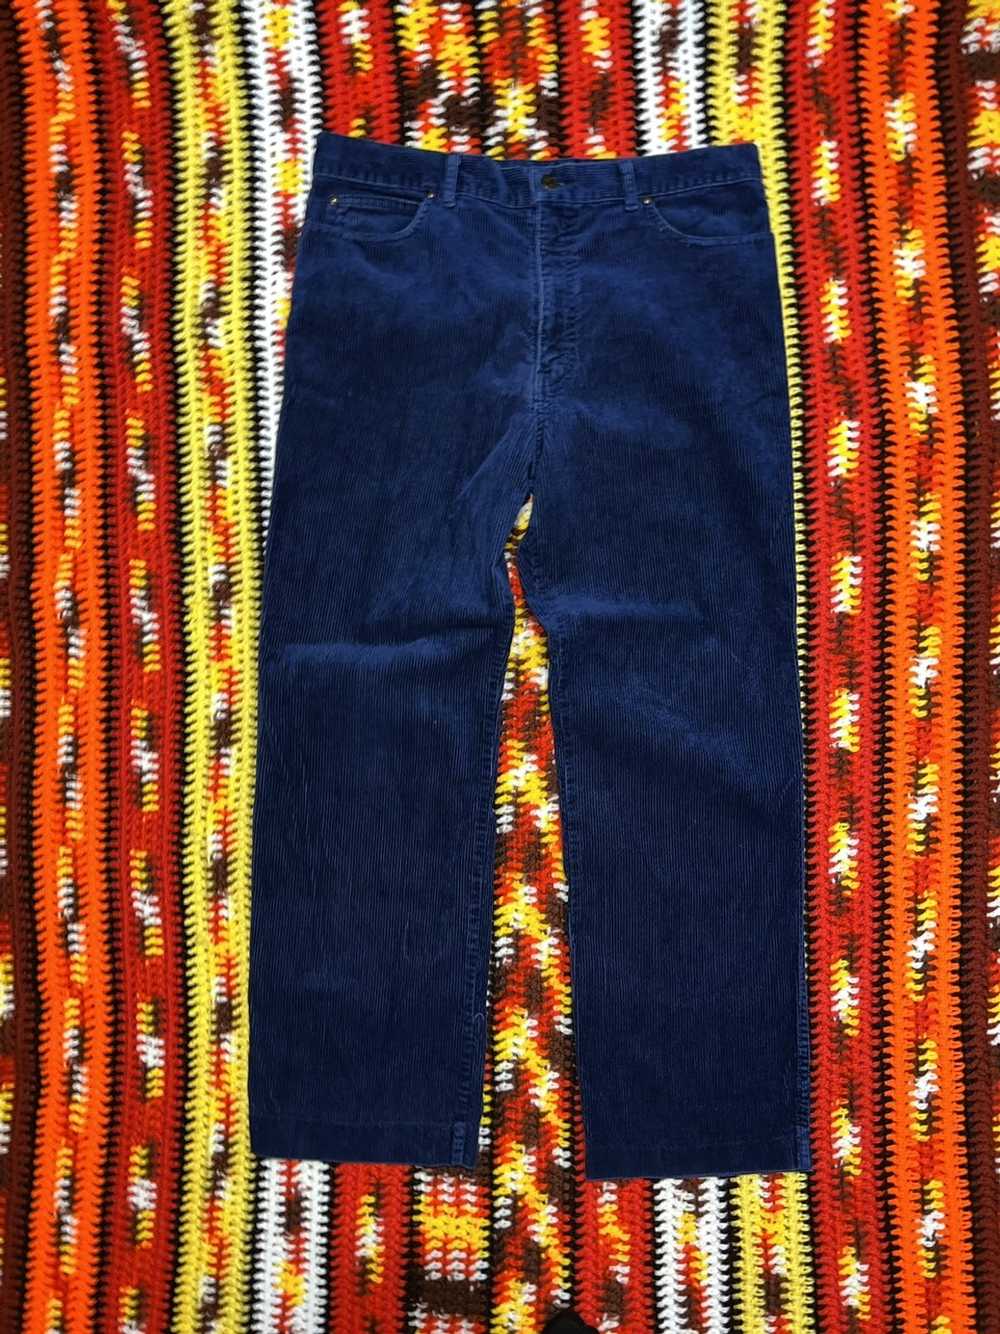 Vintage Vintage 90’s corduroy Pants Blue straight… - image 1